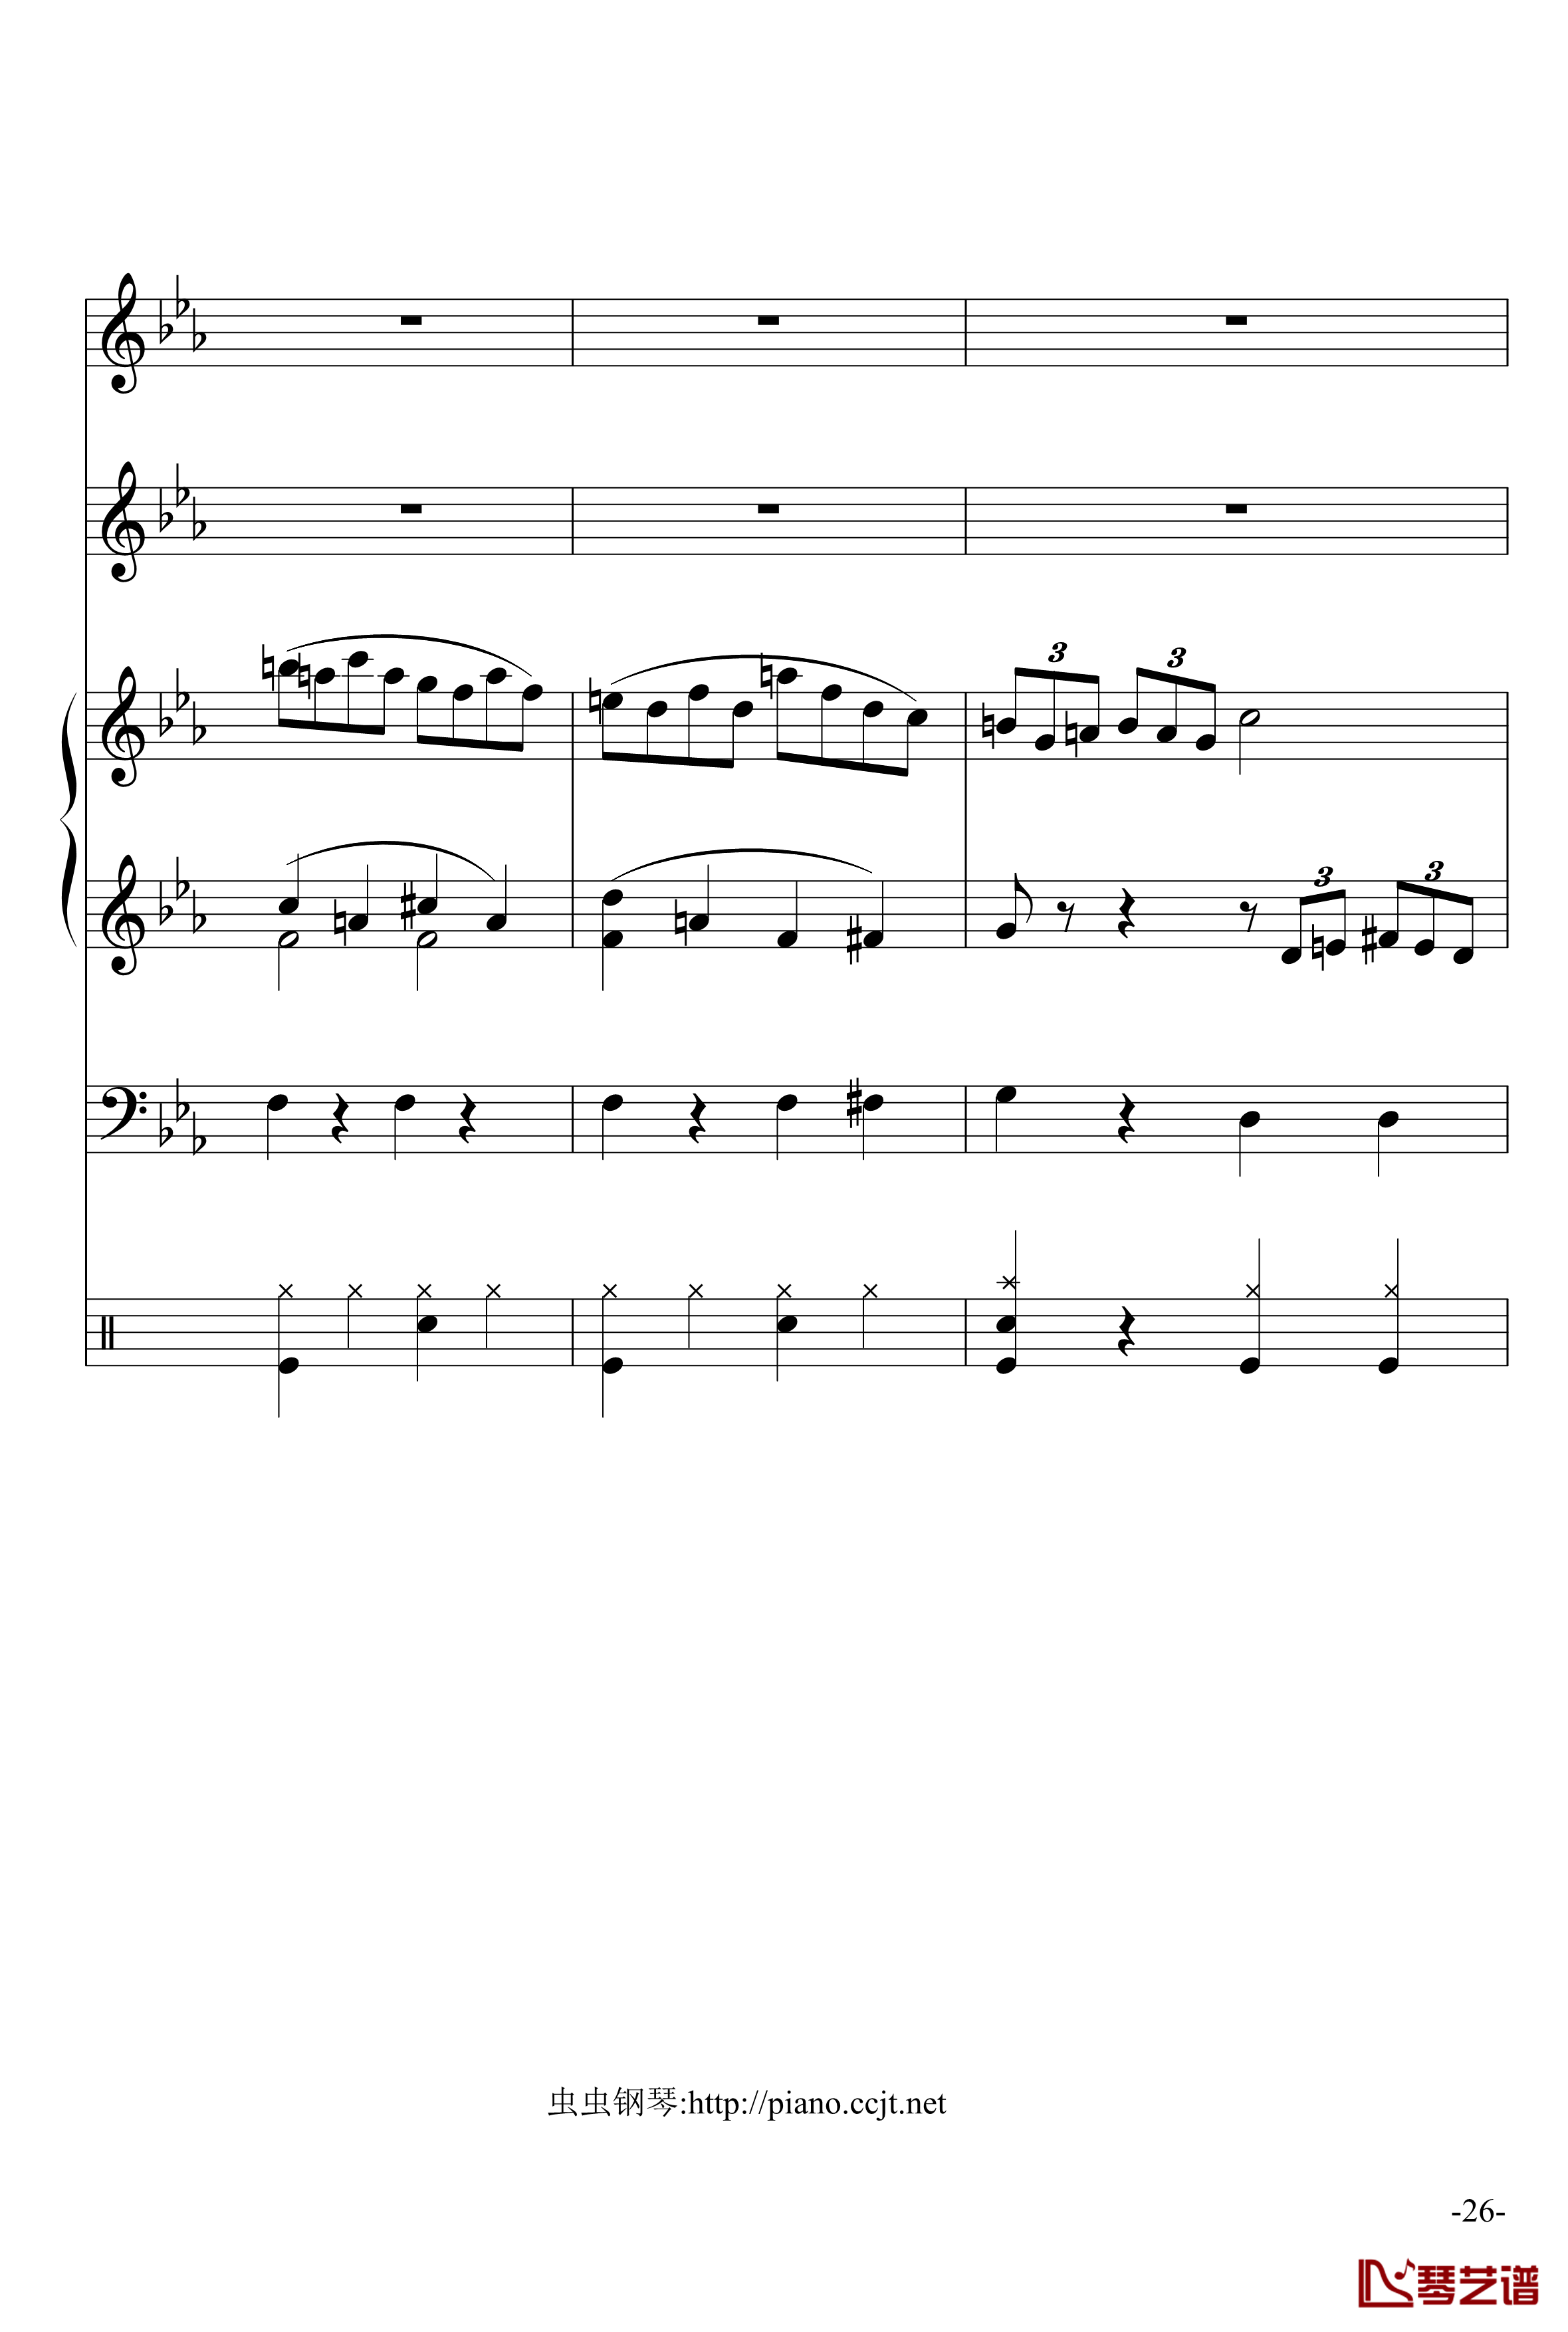 悲怆奏鸣曲钢琴谱-加小乐队-贝多芬-beethoven26